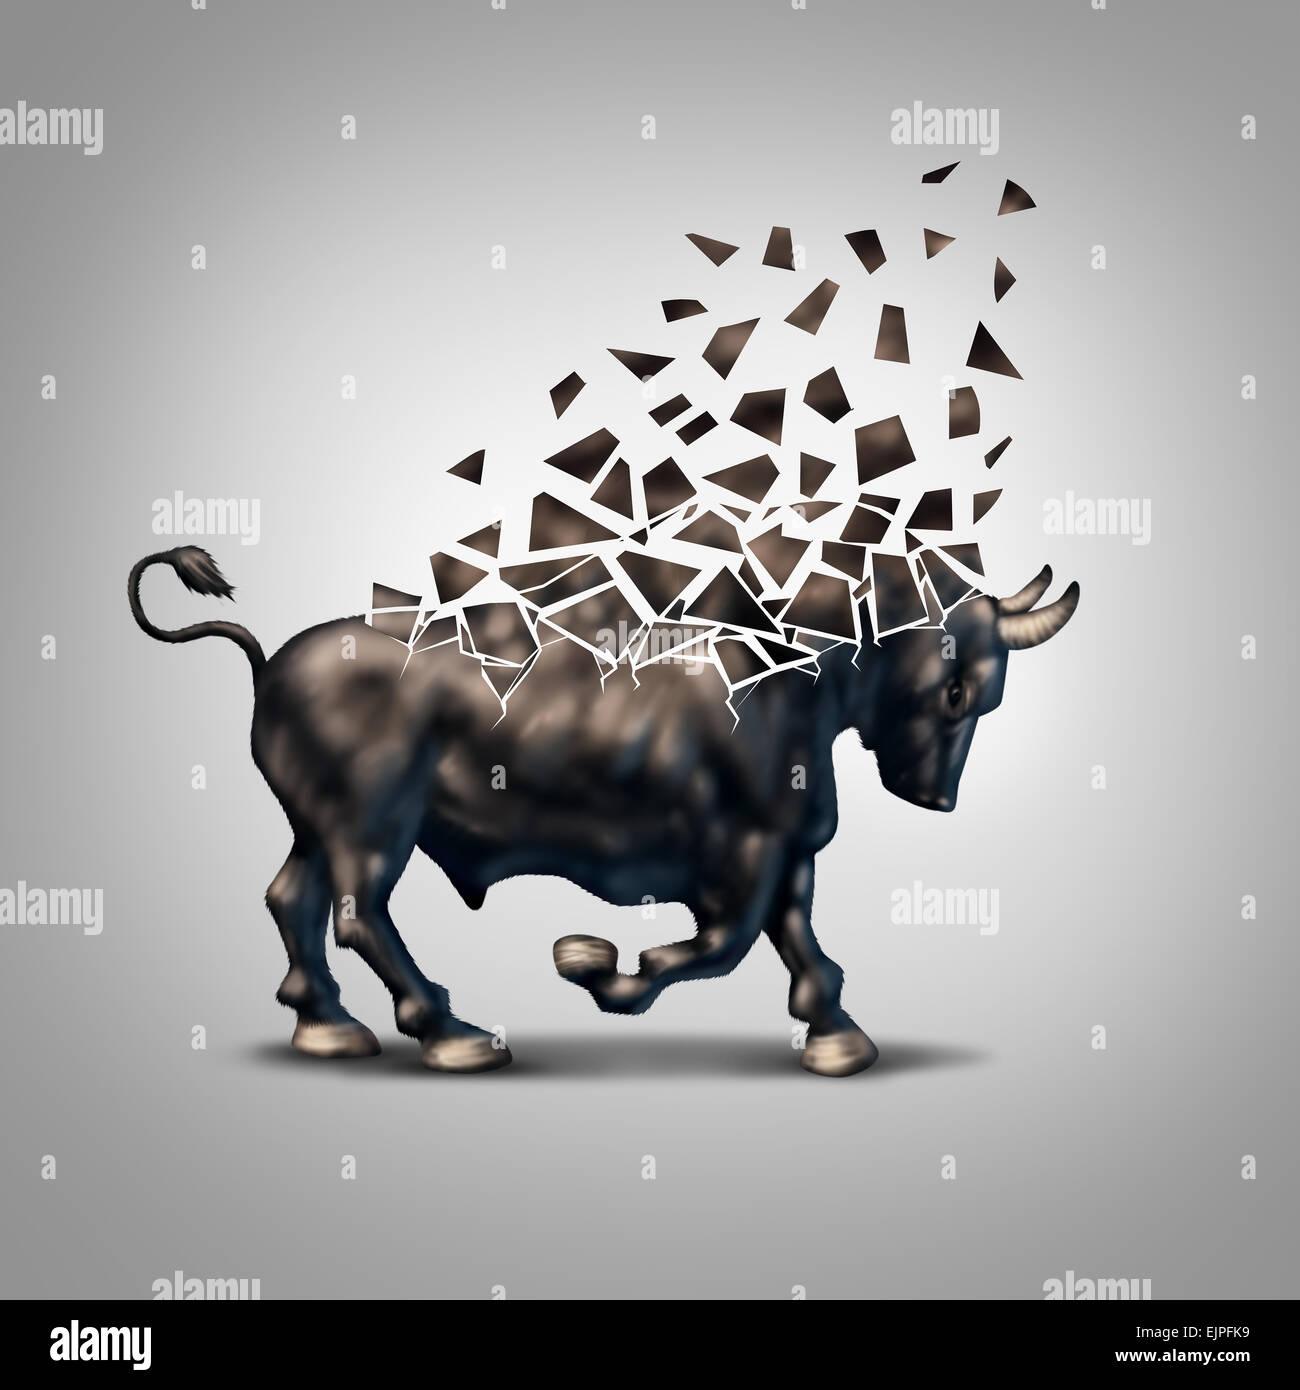 Crise financière des bull fragile comme un symbole concept économique pour l'effondrement des prévisions positives et les investissements en train de s'effondrer en raison de la perte de valeur sur le marché boursier. Banque D'Images